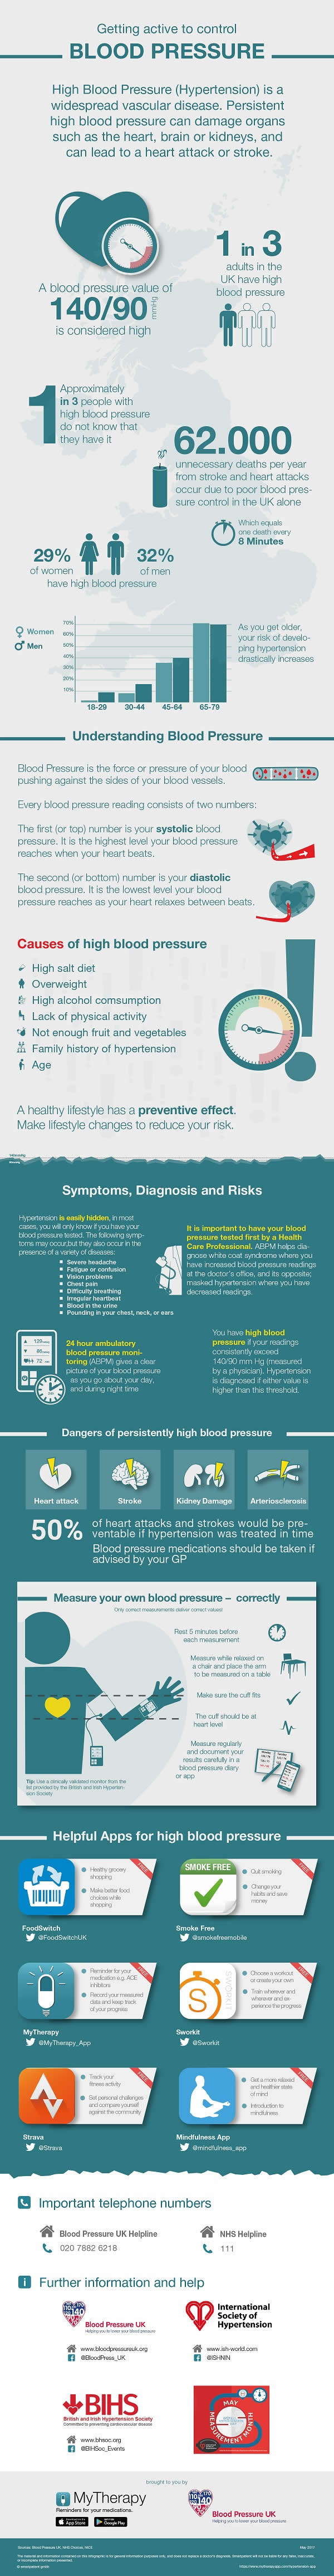 hypertension_infographic_uk